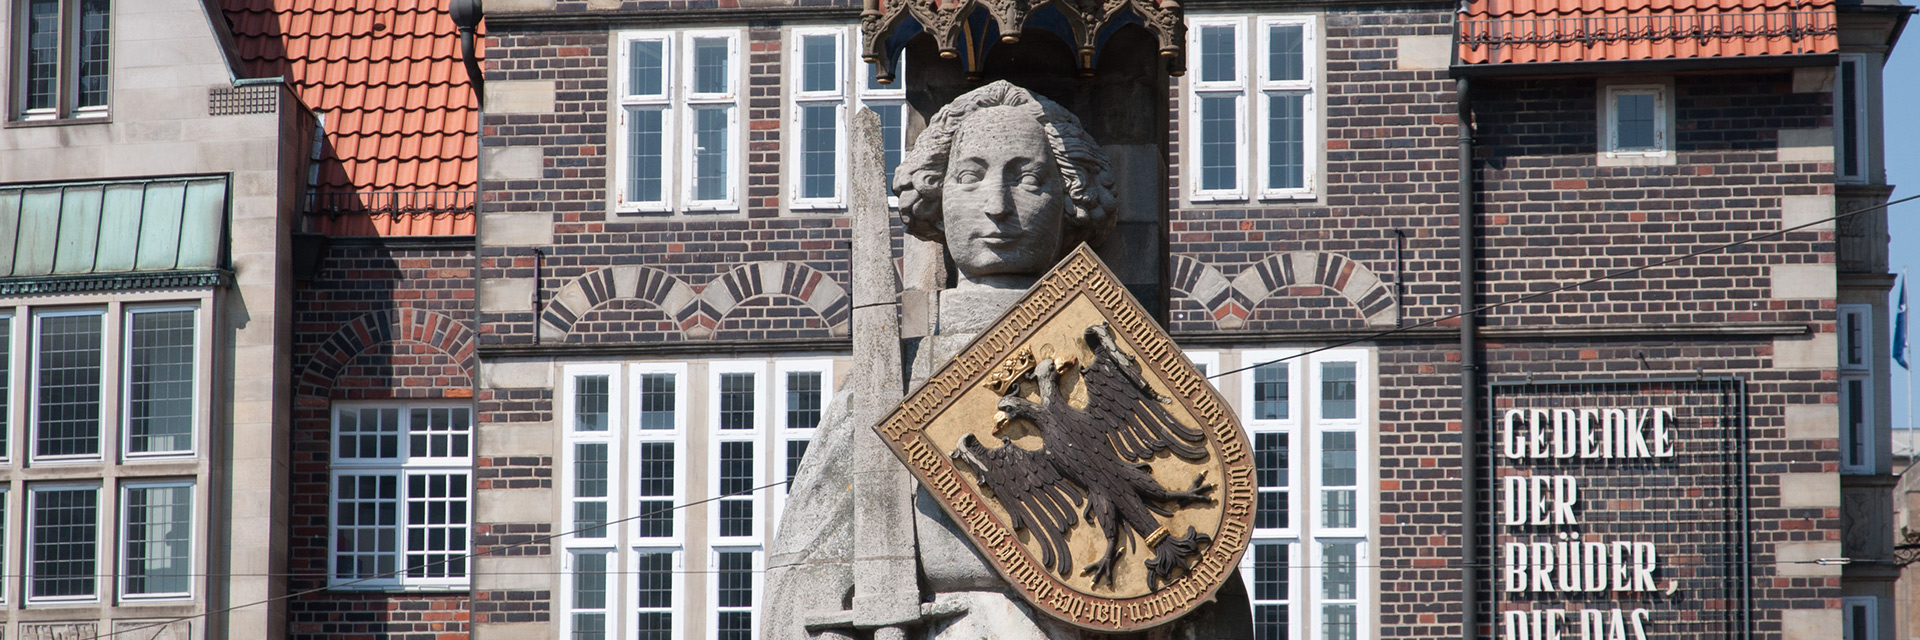 Der Bremer Roland auf dem Marktplatz, der für die Rechte der Hansestadt Bremen steht.